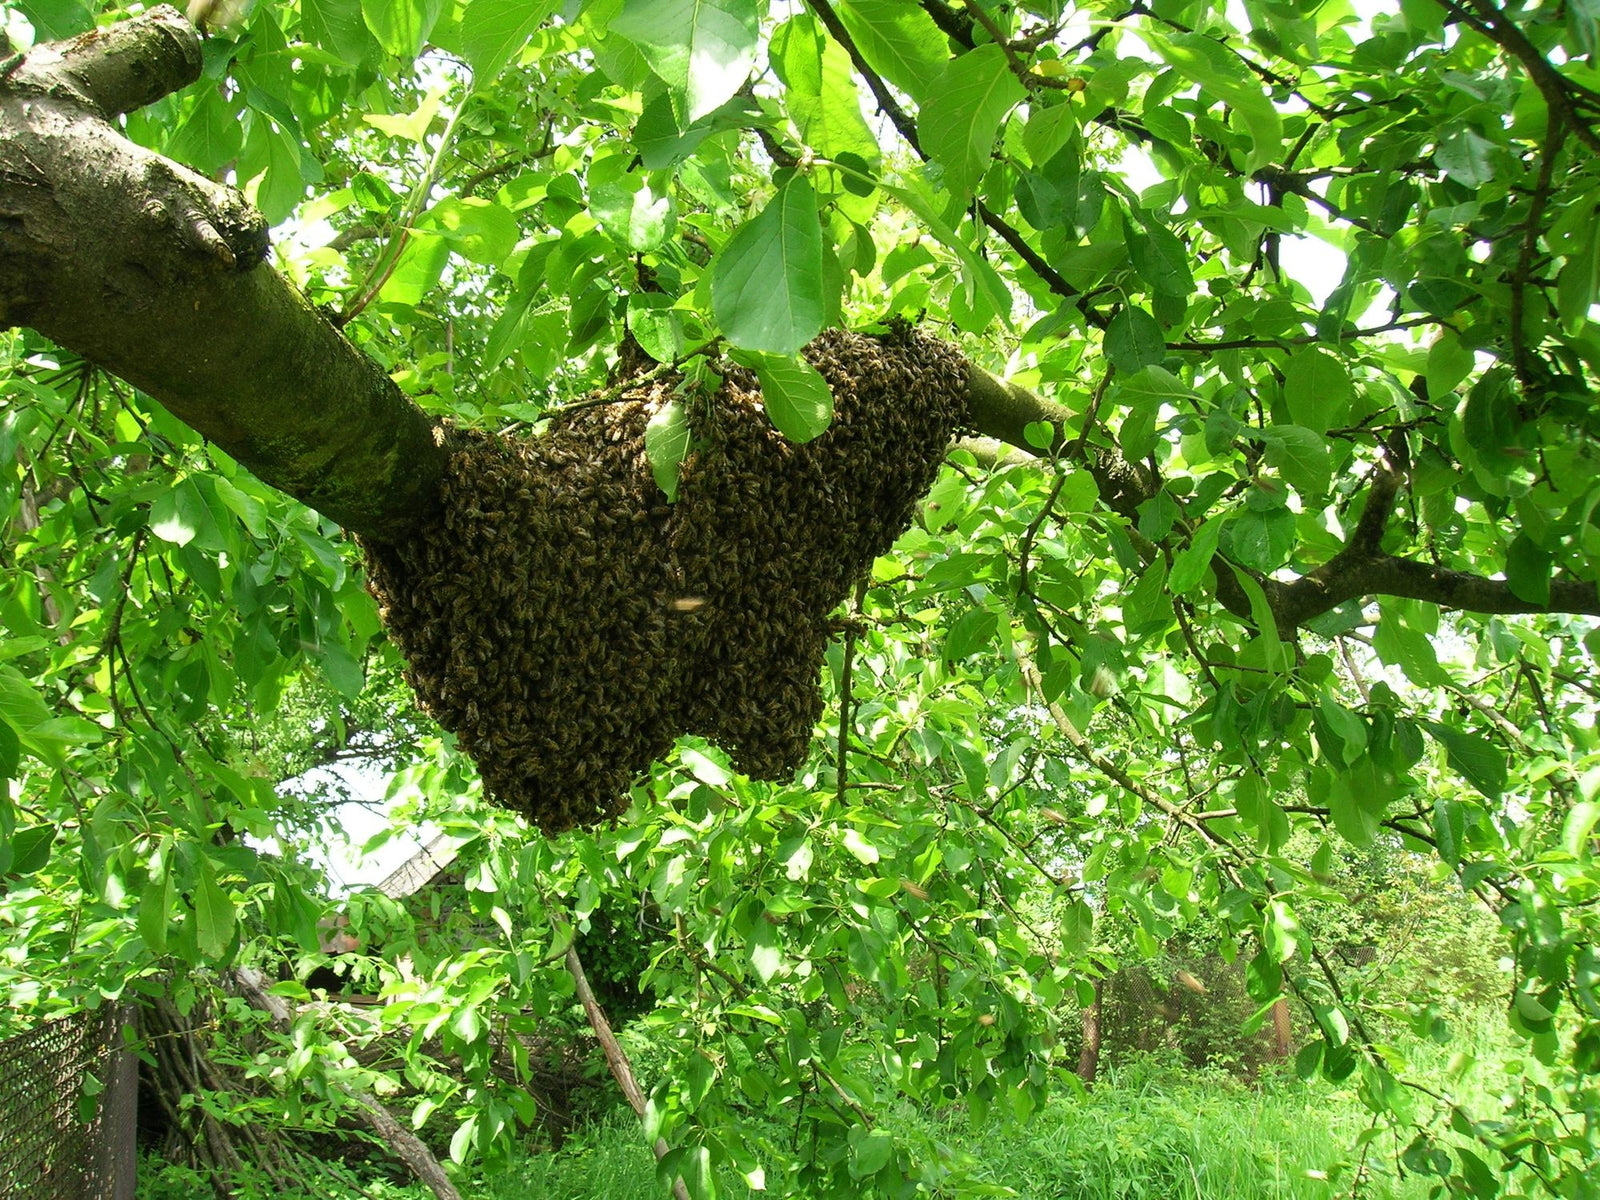 Minding your beeswax - Ecrotek Beekeeping Supplies Australia